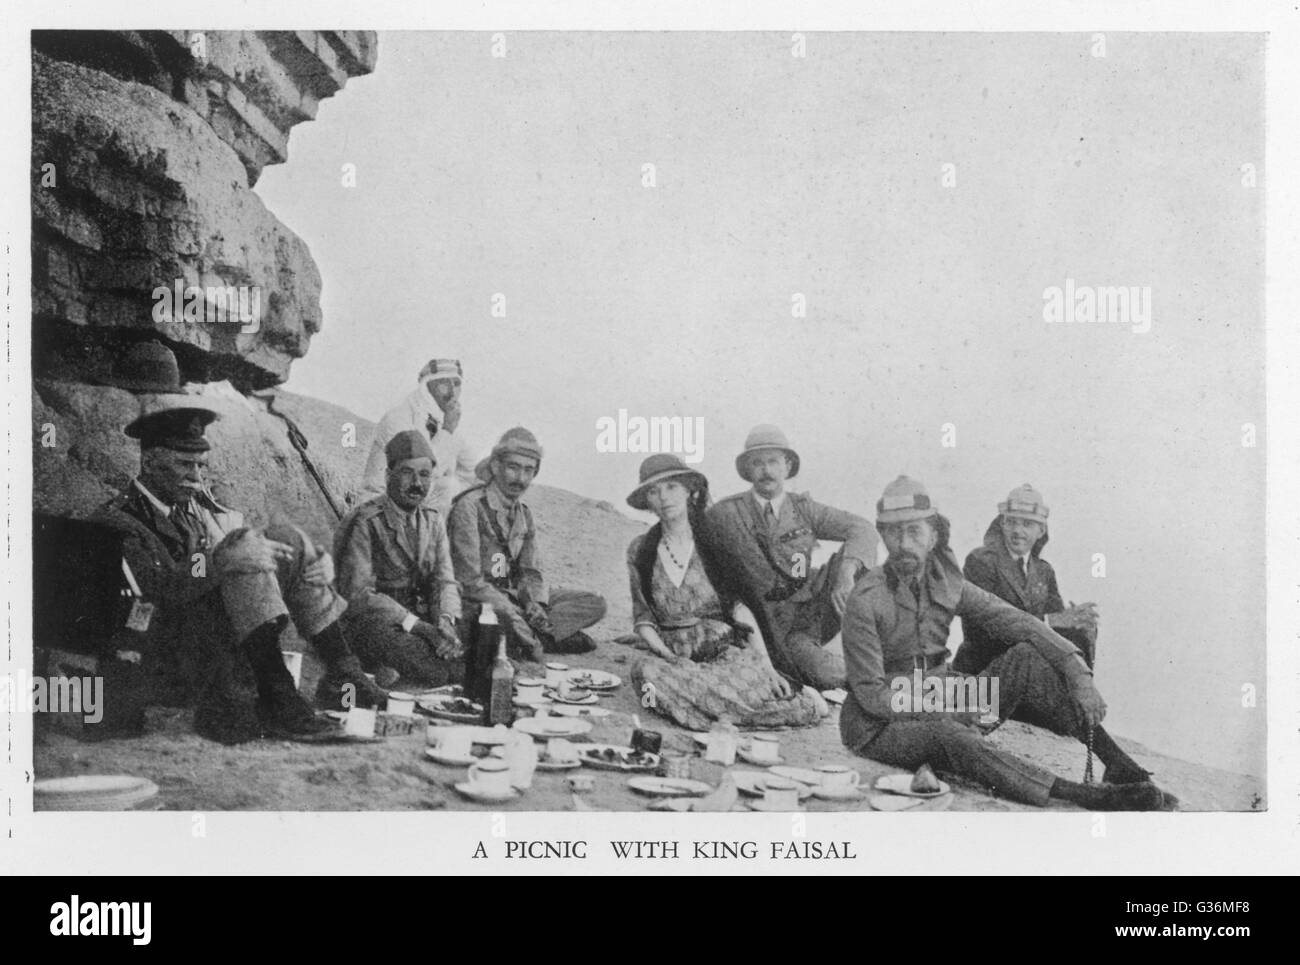 Gertrude Bell, englischer Reisender, Picknicken mit König Faisal von Irak (sitzend, zweiter von rechts) im Jahre 1922.       Datum: 1922 Stockfoto